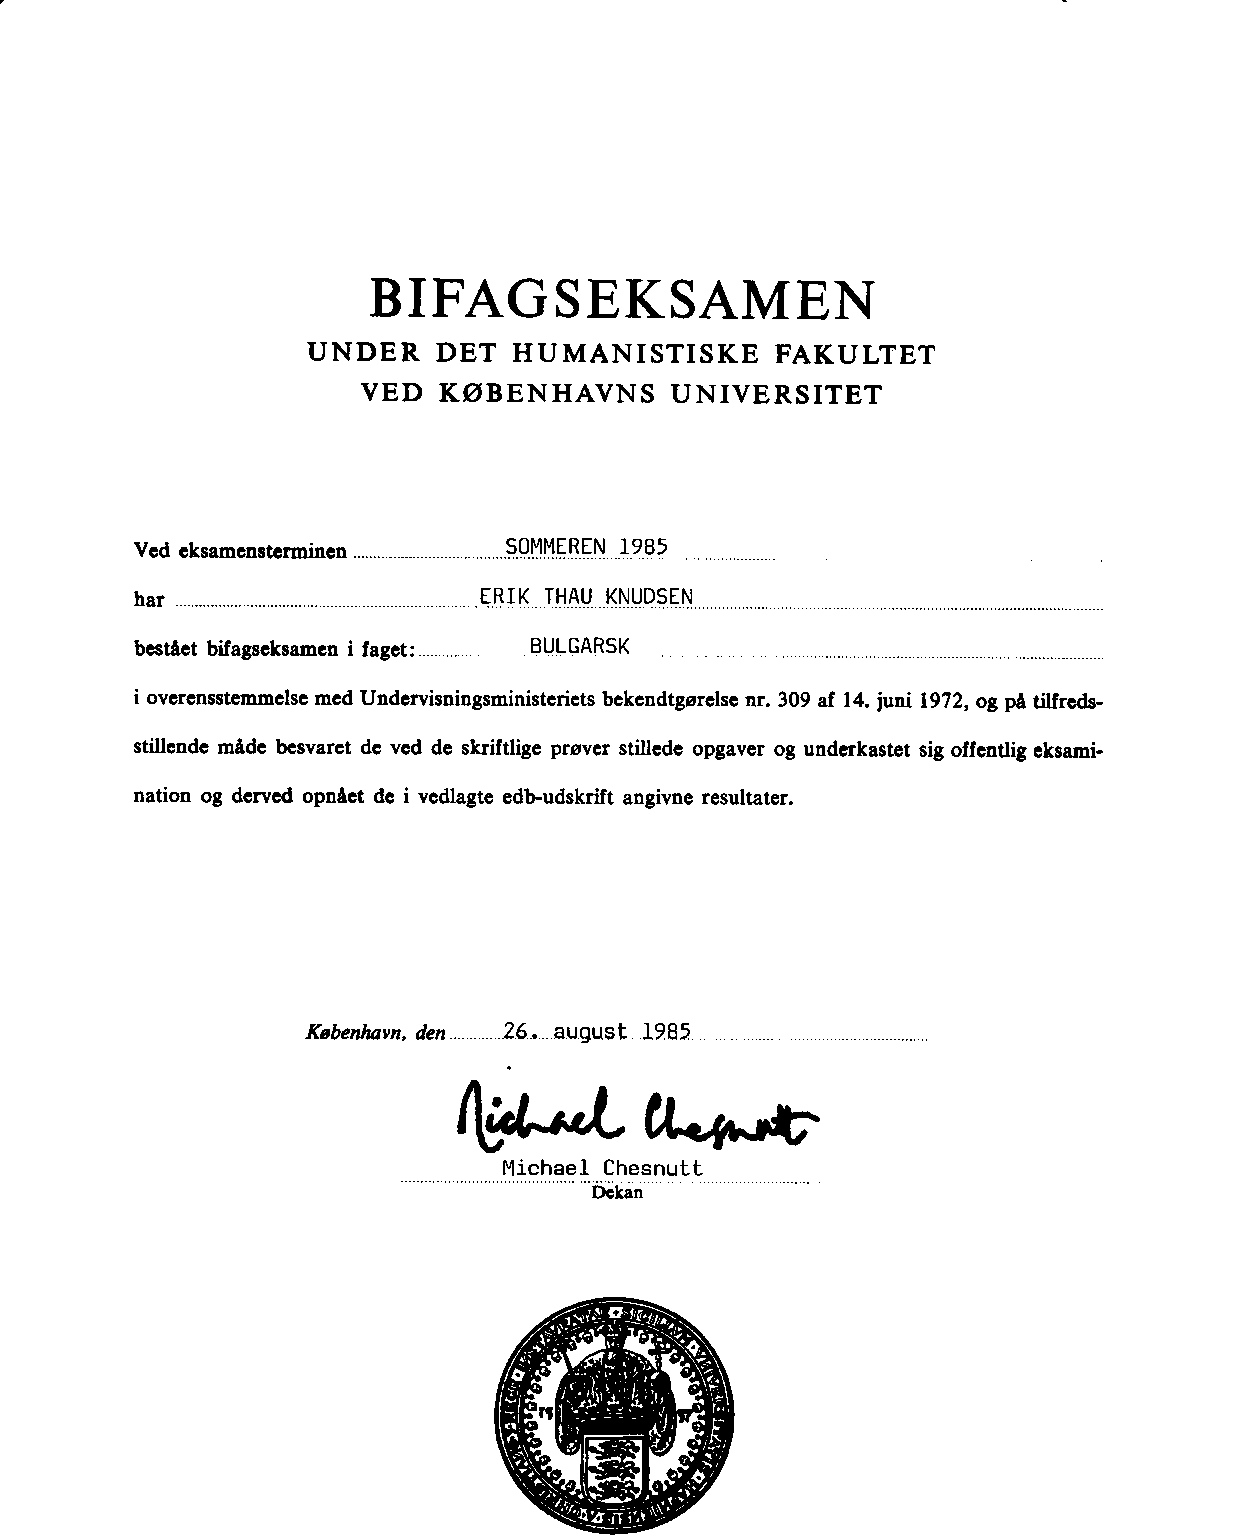 Side 1: Bifagseksamen under Det humanistiske Fakultet ved Københavns Universitet, undertegnet af dekan Michael Chestnutt 26. august 1985